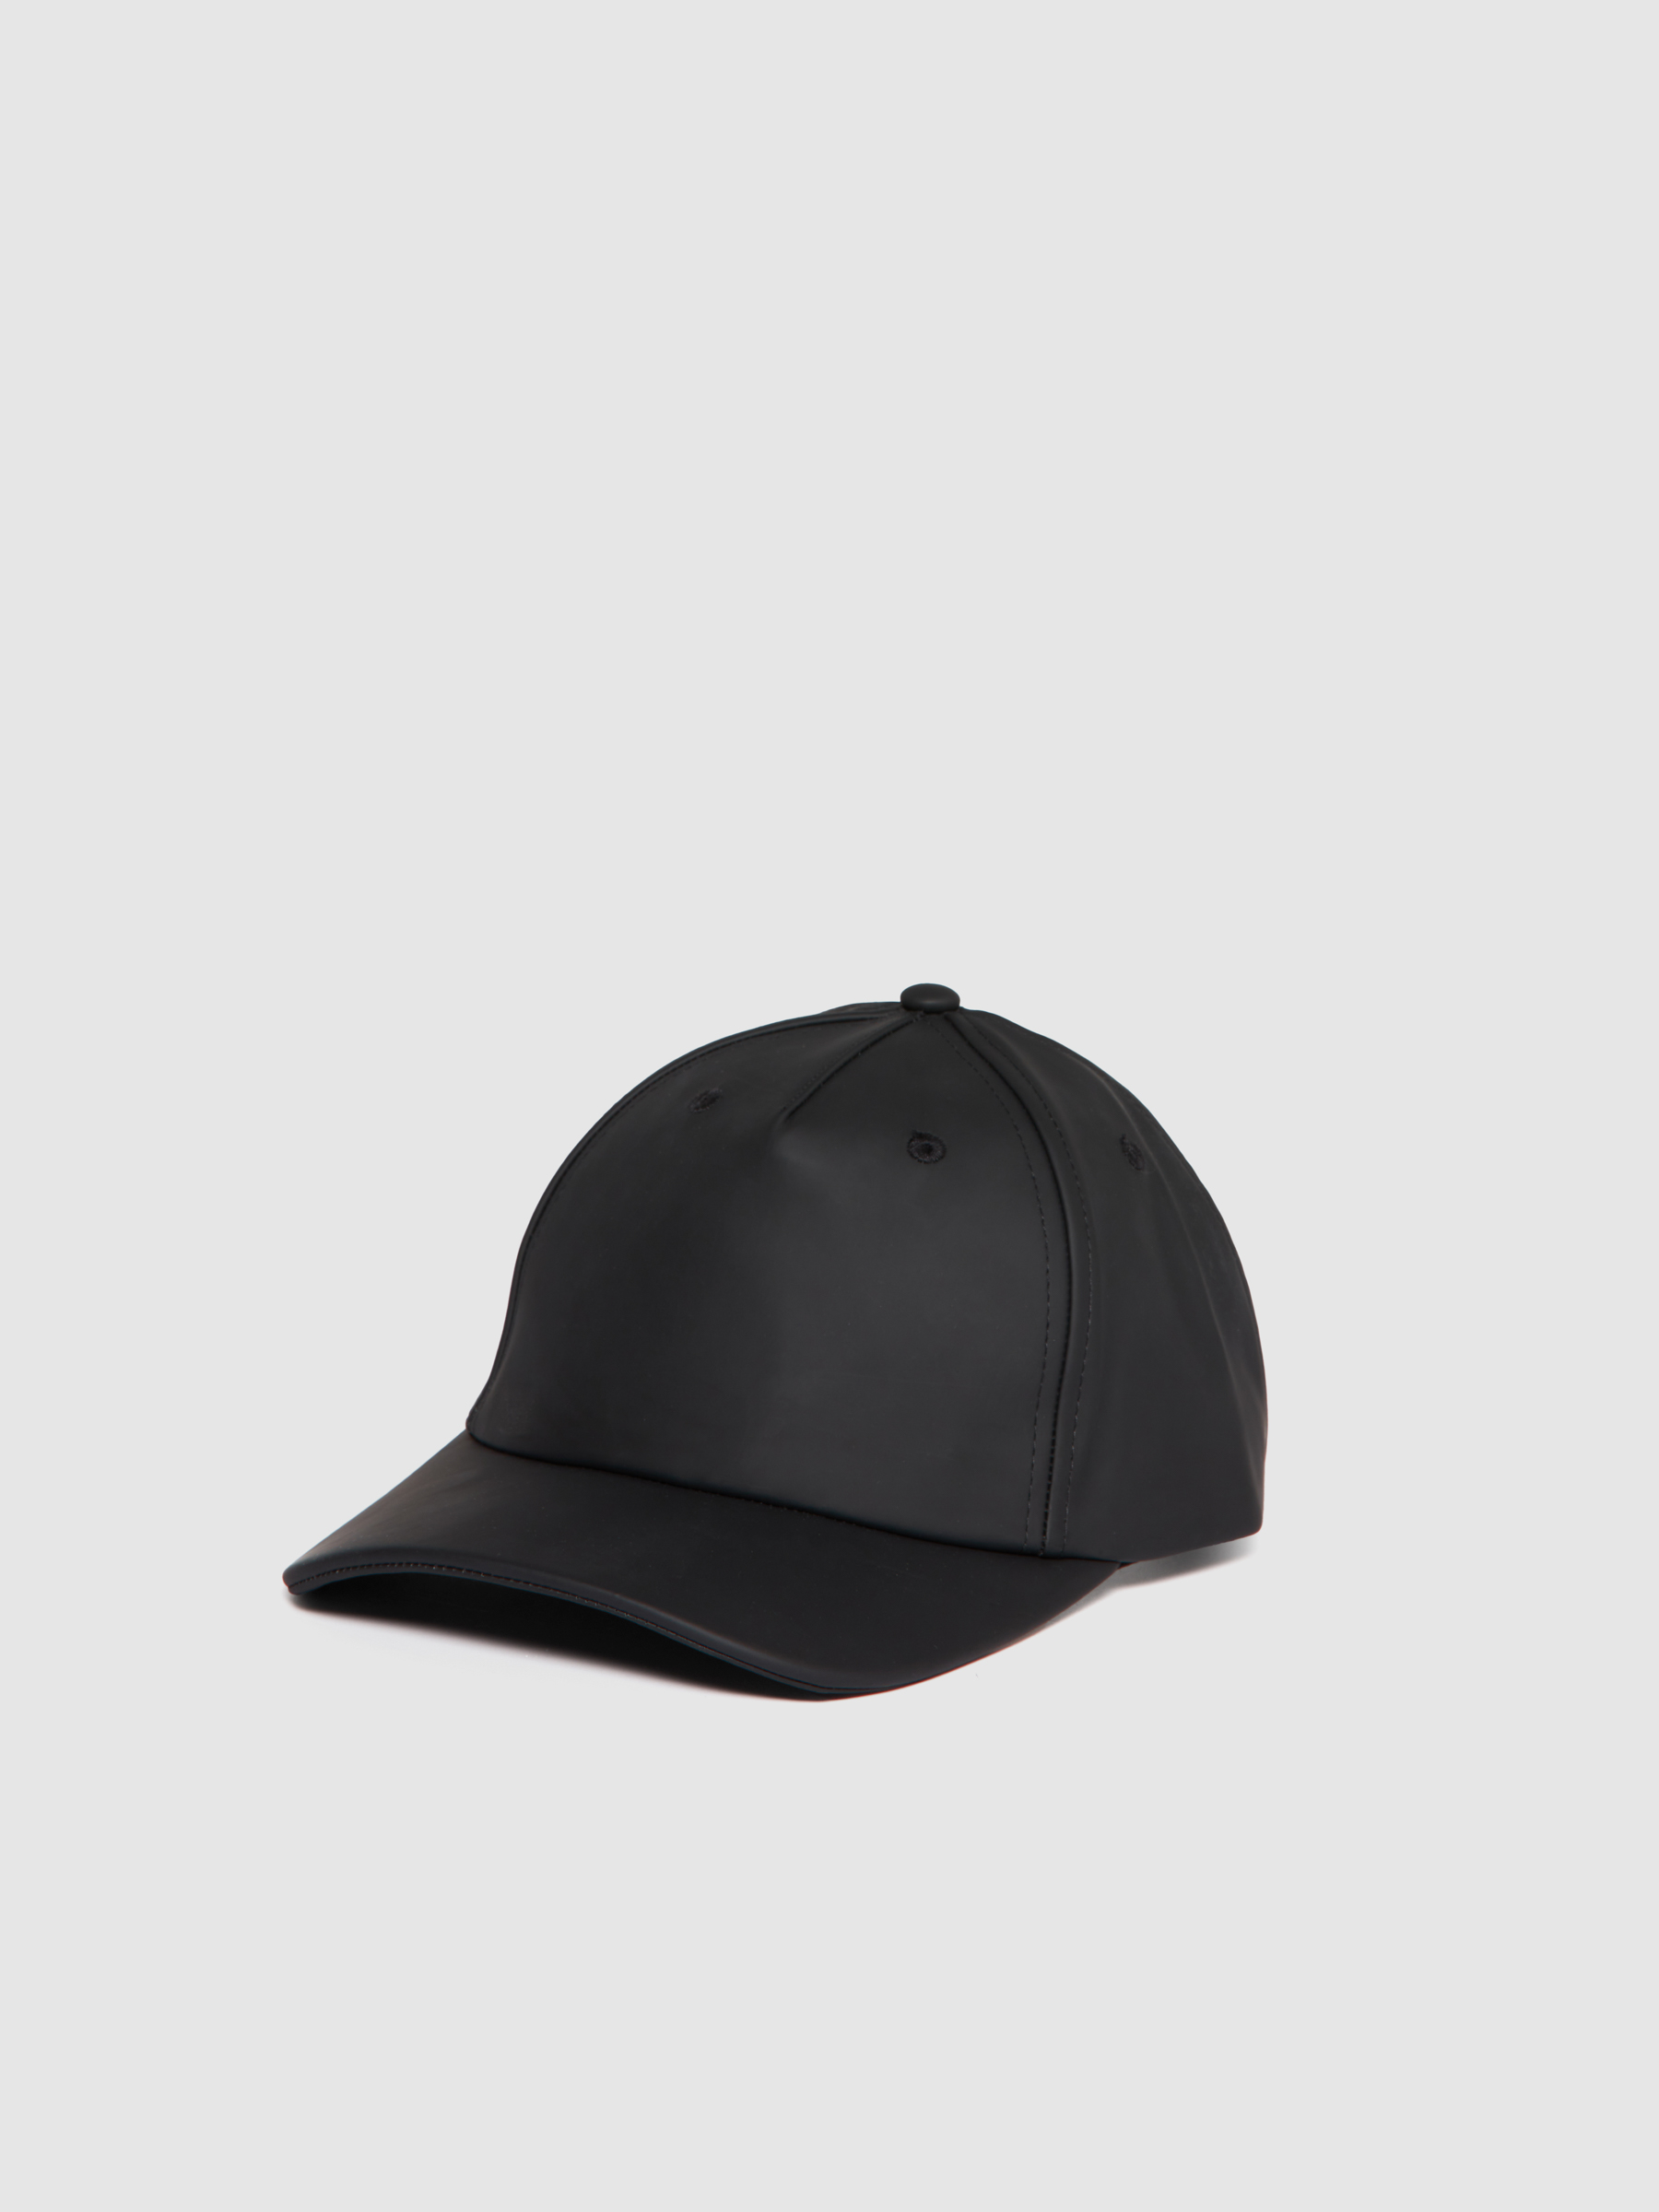 Sisley - Solid Colored Cap, Man, Black